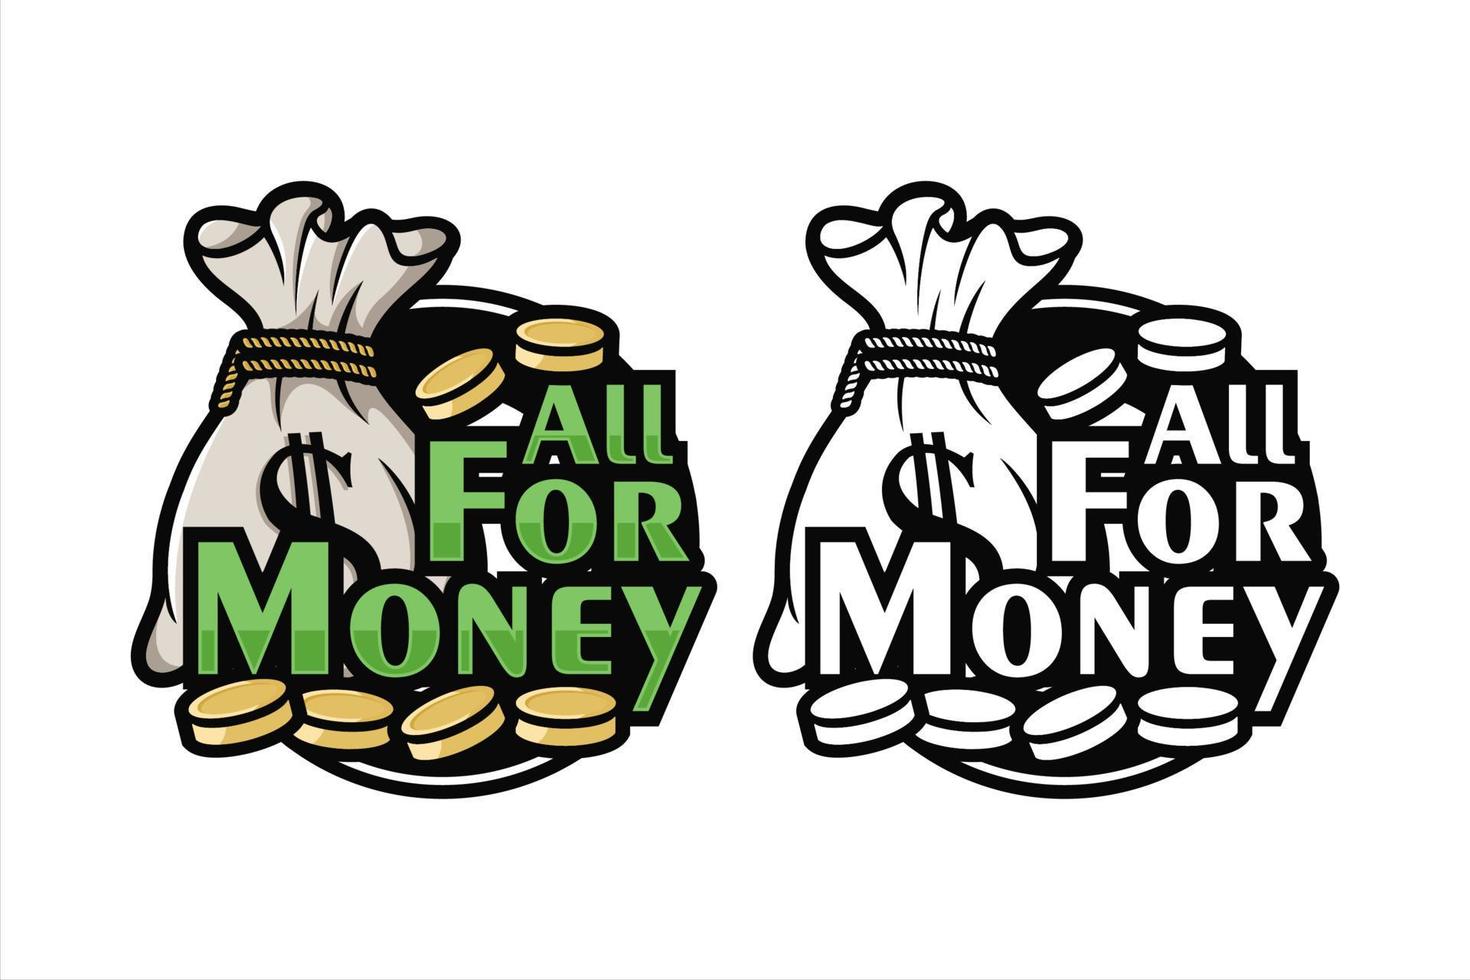 All for money design illustration vector